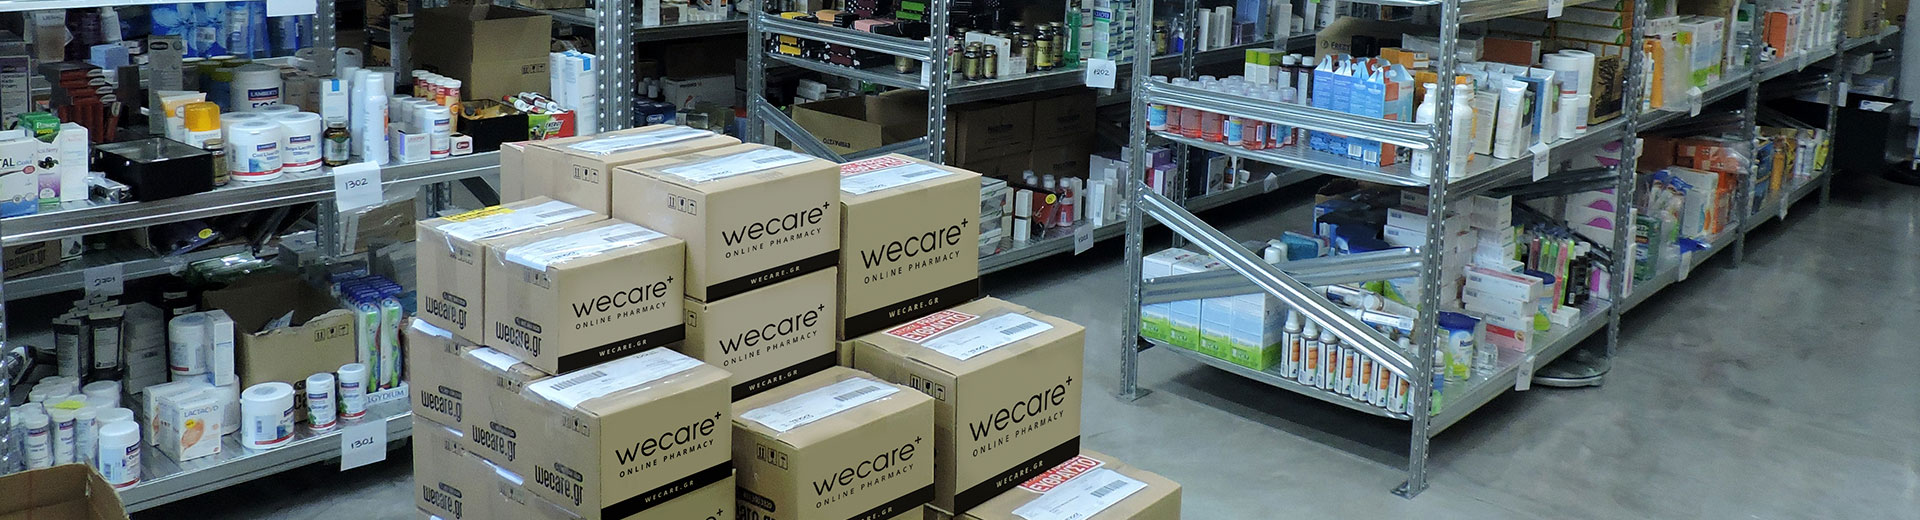 Wecare - معايير تخزين وصيانة عالية للمنتجات